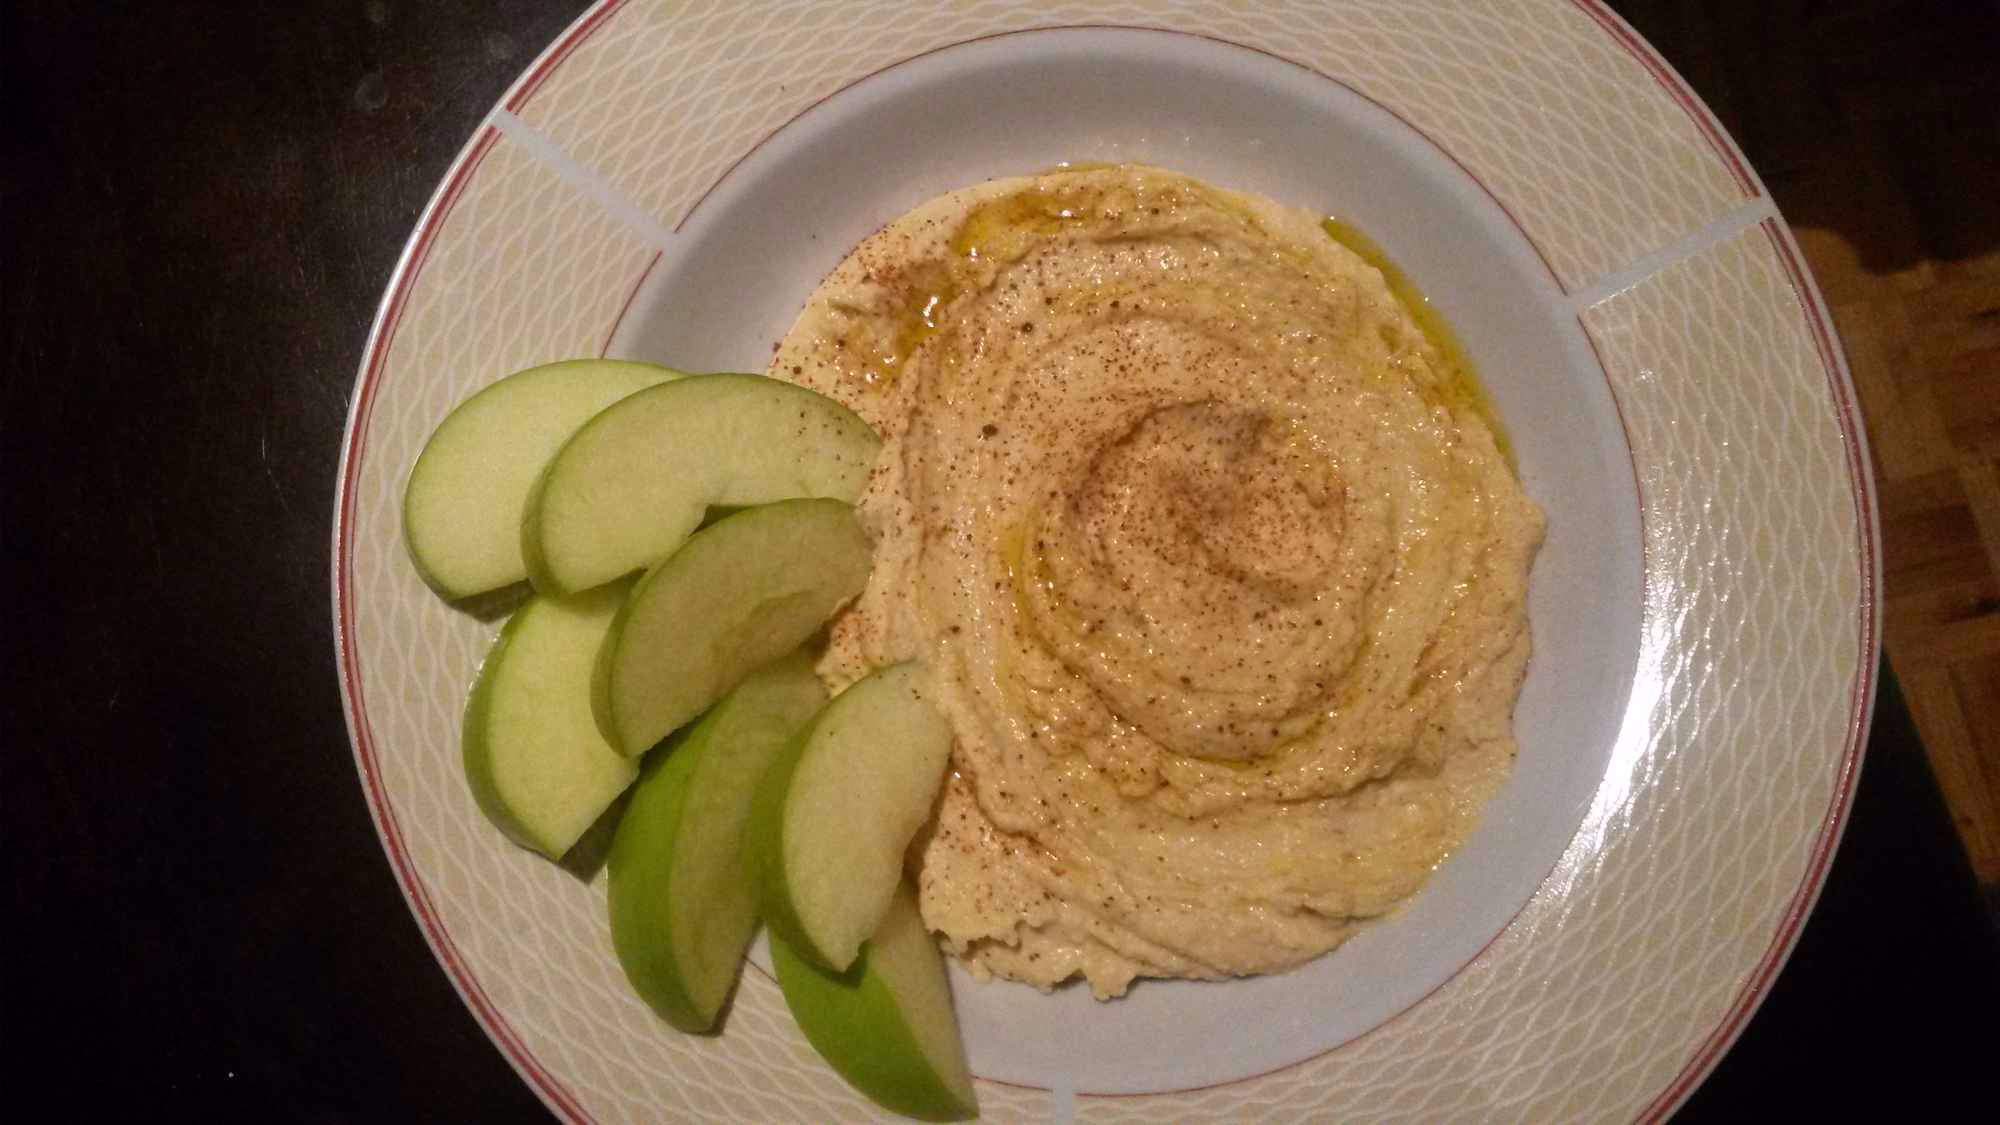  Creamy Hummus